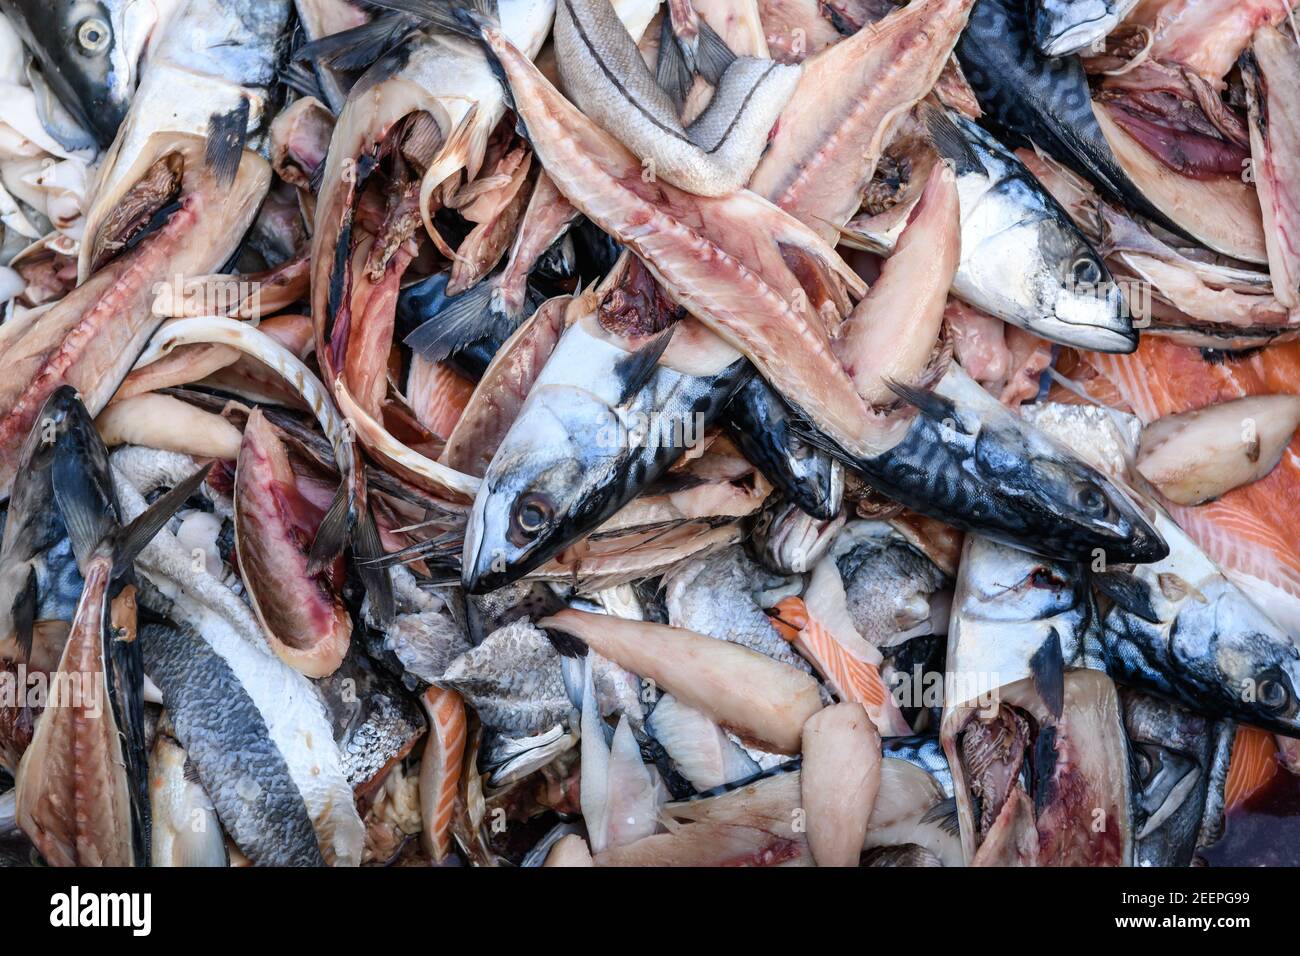 Déchets alimentaires, têtes de poisson et poissons dans une poubelle de déchets alimentaires au Birmingham Wholesale Markert, Birmingham, Angleterre, Royaume-Uni Banque D'Images